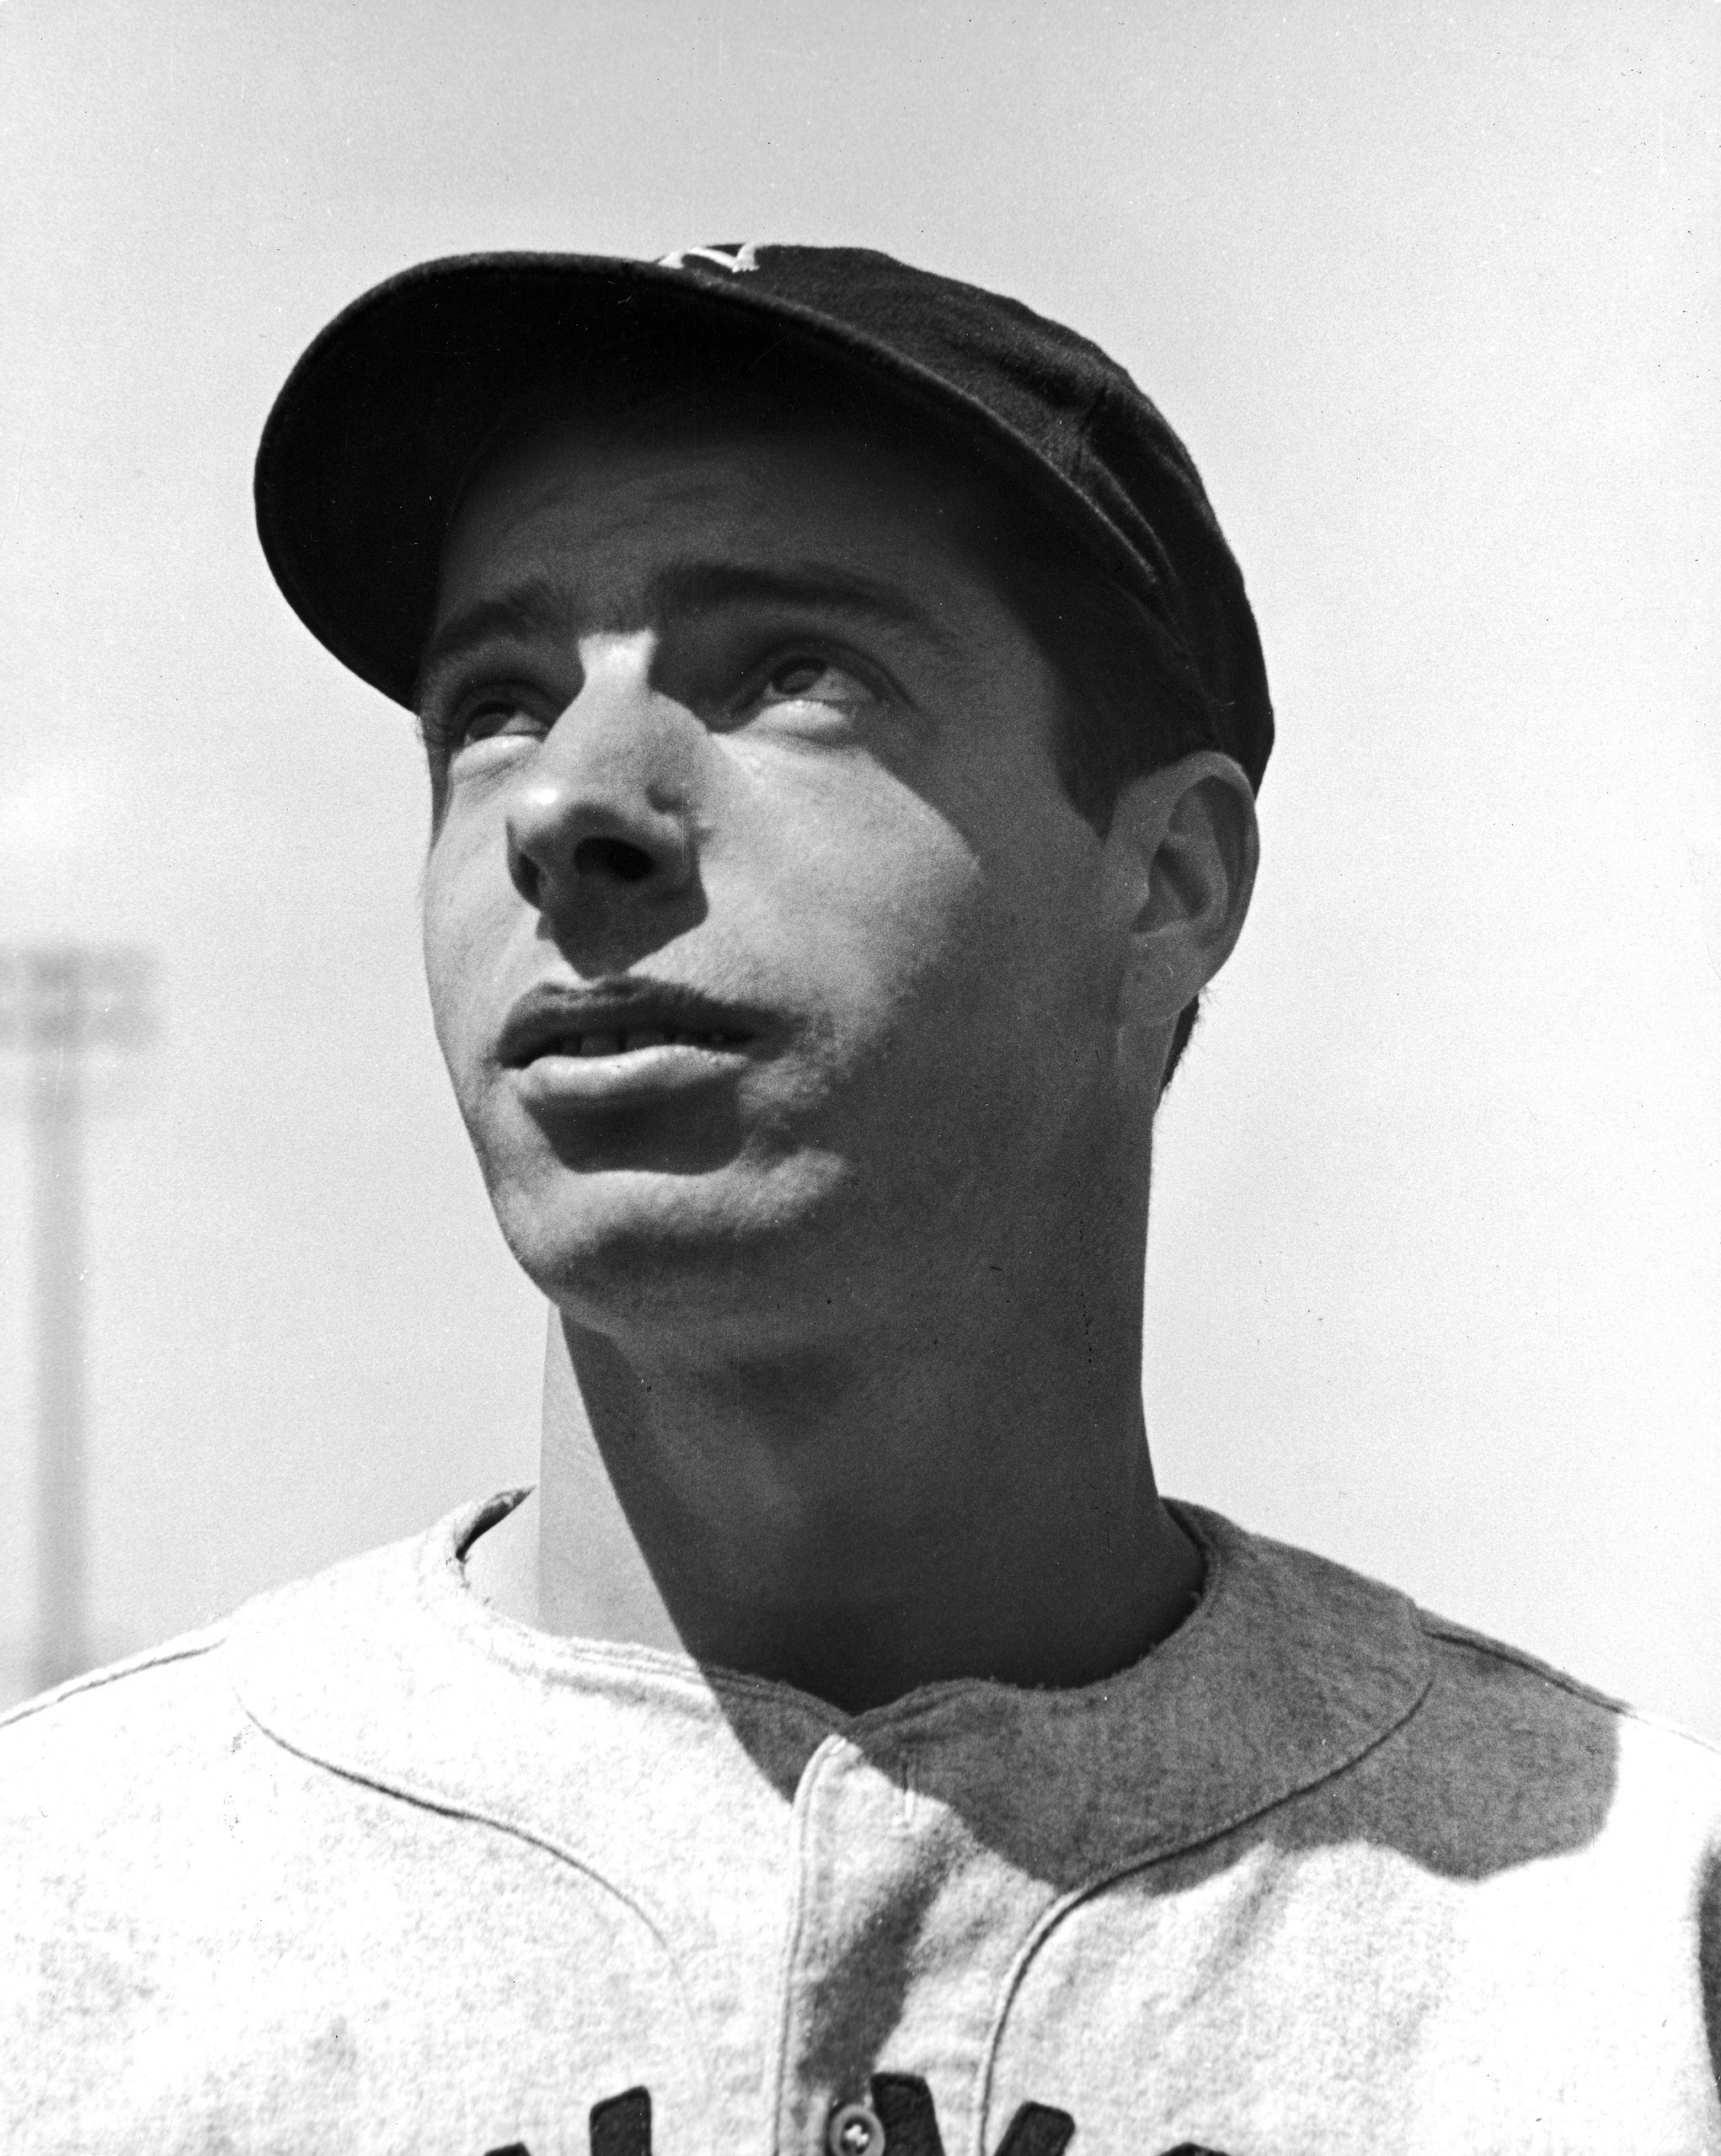 Joe DiMaggio, 1939.